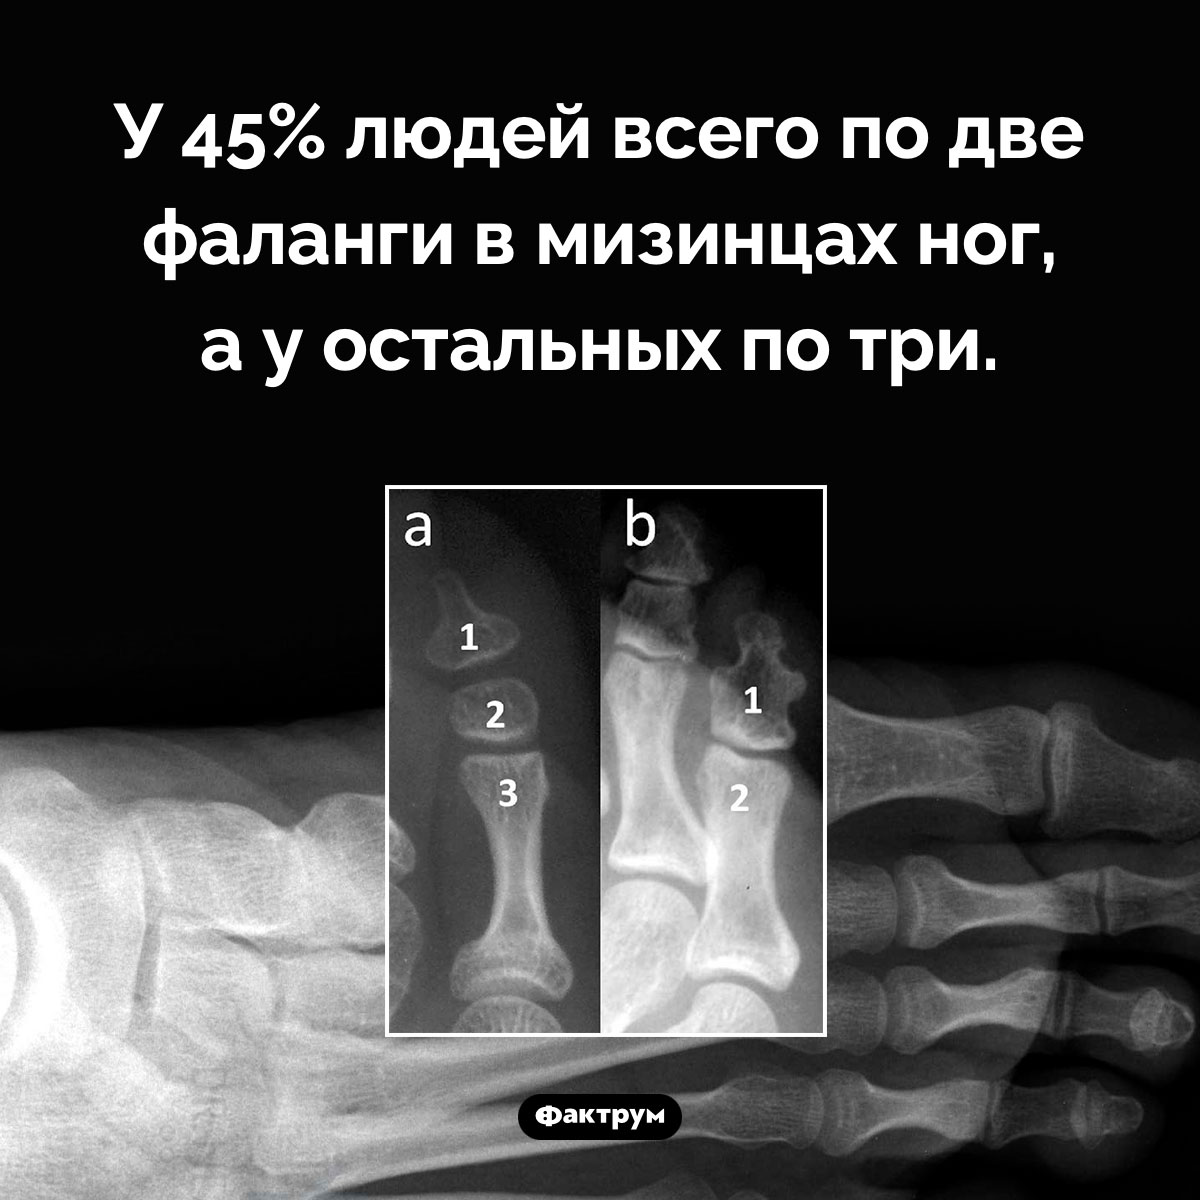 Сколько фаланг в мизинцах ног. У 45% людей всего по две фаланги в мизинцах ног, а у остальных по три.